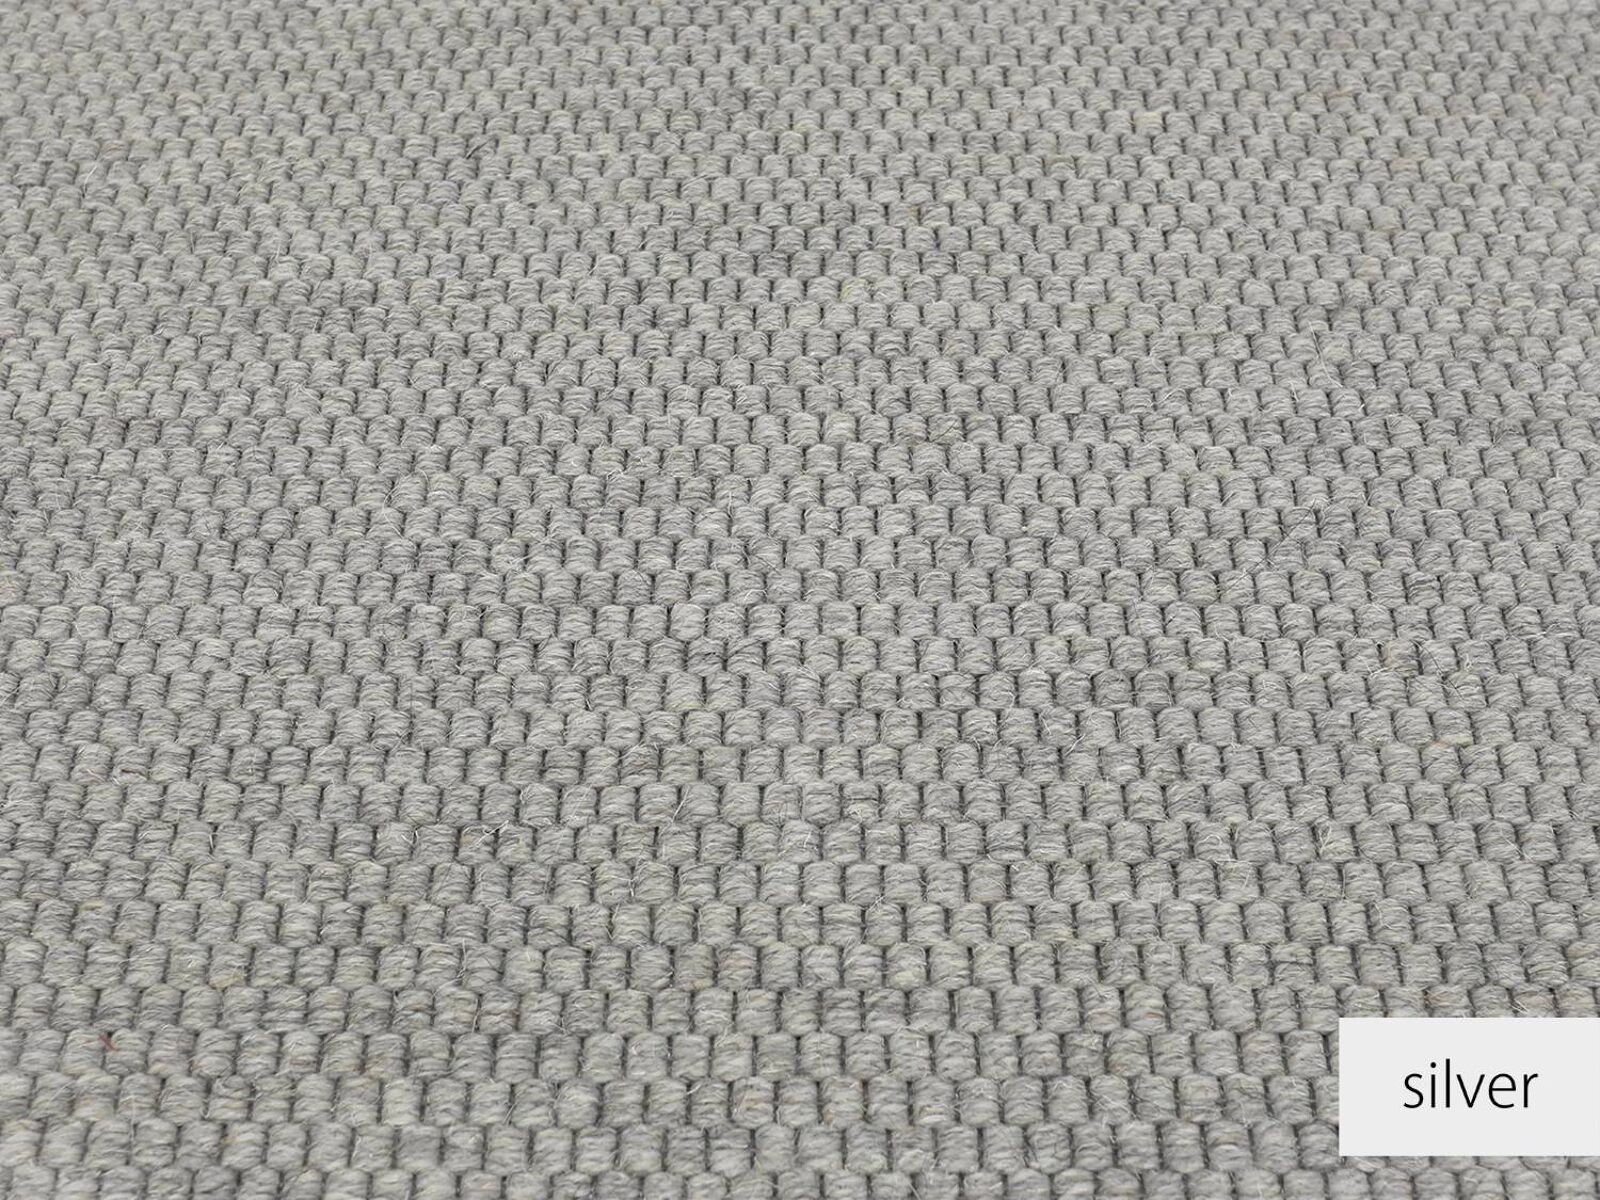 Saba Teppichboden | gewebte Wolle | 400cm Breite